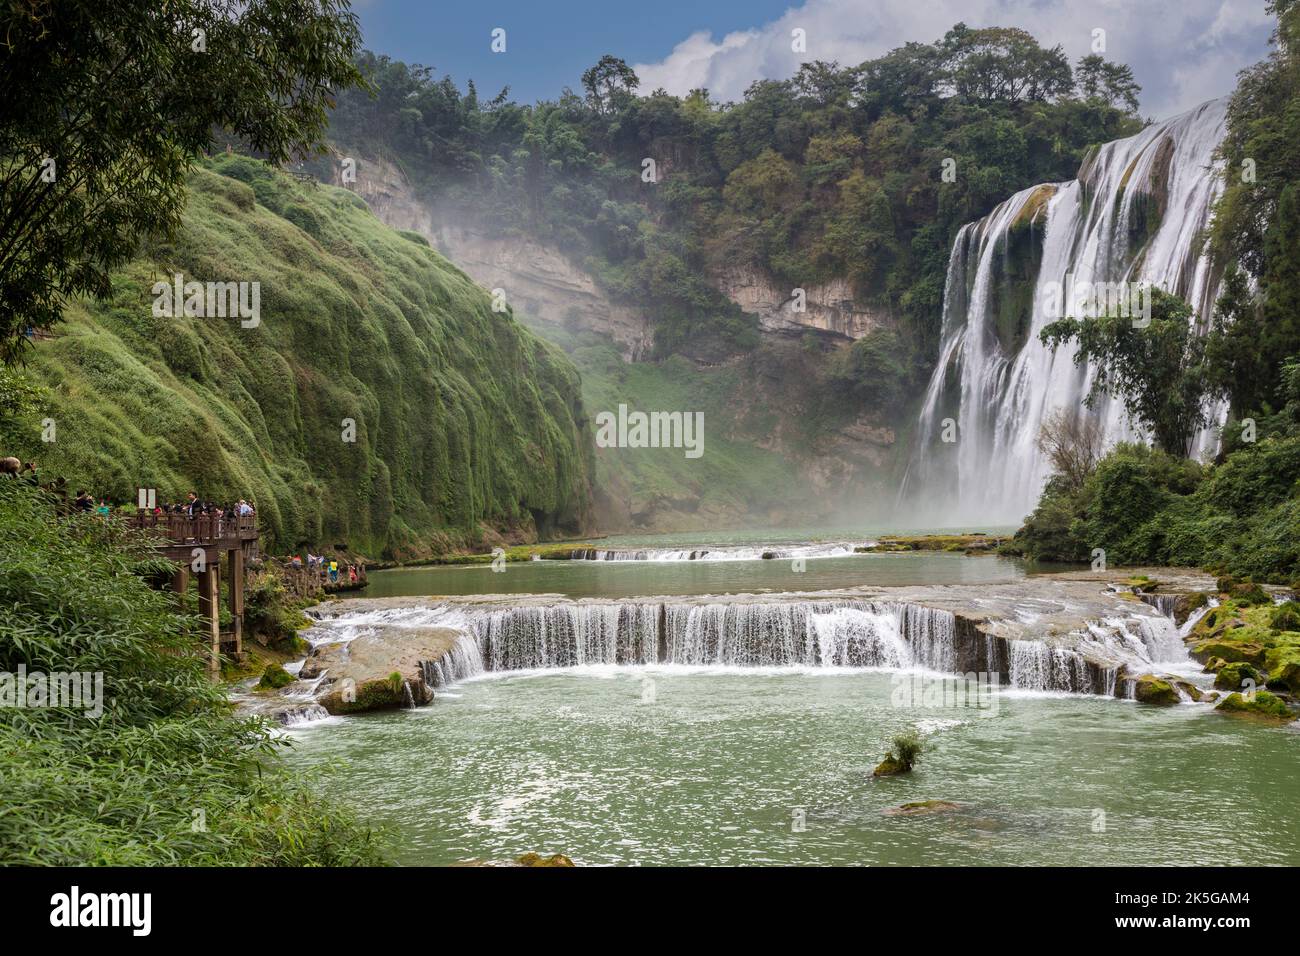 La province du Guizhou, en Chine. Les fruits jaunes (arbre) Huangguoshu Waterfall Scenic Area. Banque D'Images